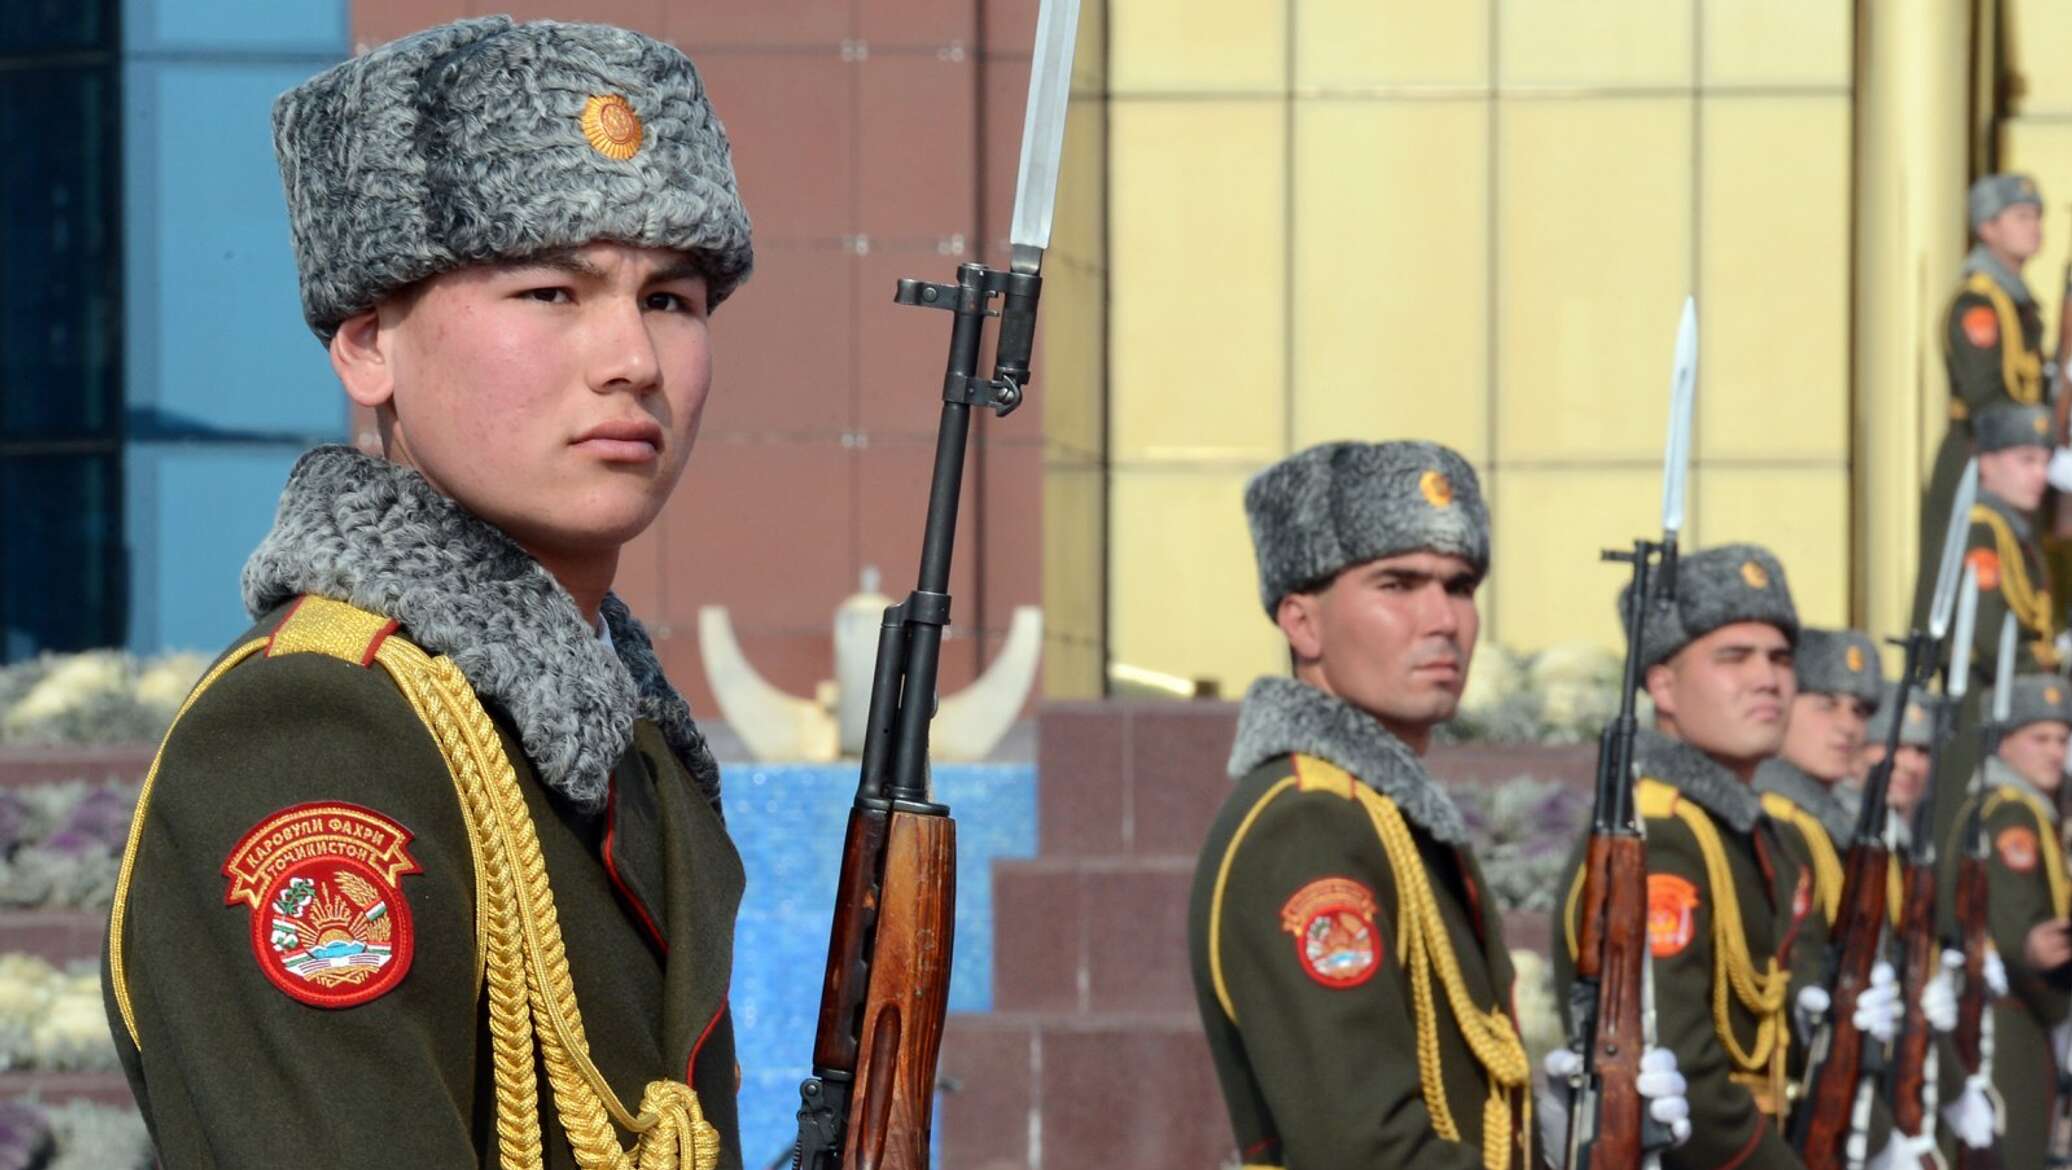 Празднуют ли 23 февраля на украине. Рота почетного караула Таджикистан. Почетный караул Узбекистана. Рота почетного караула на параде. Форма почетного караула Узбекистана.